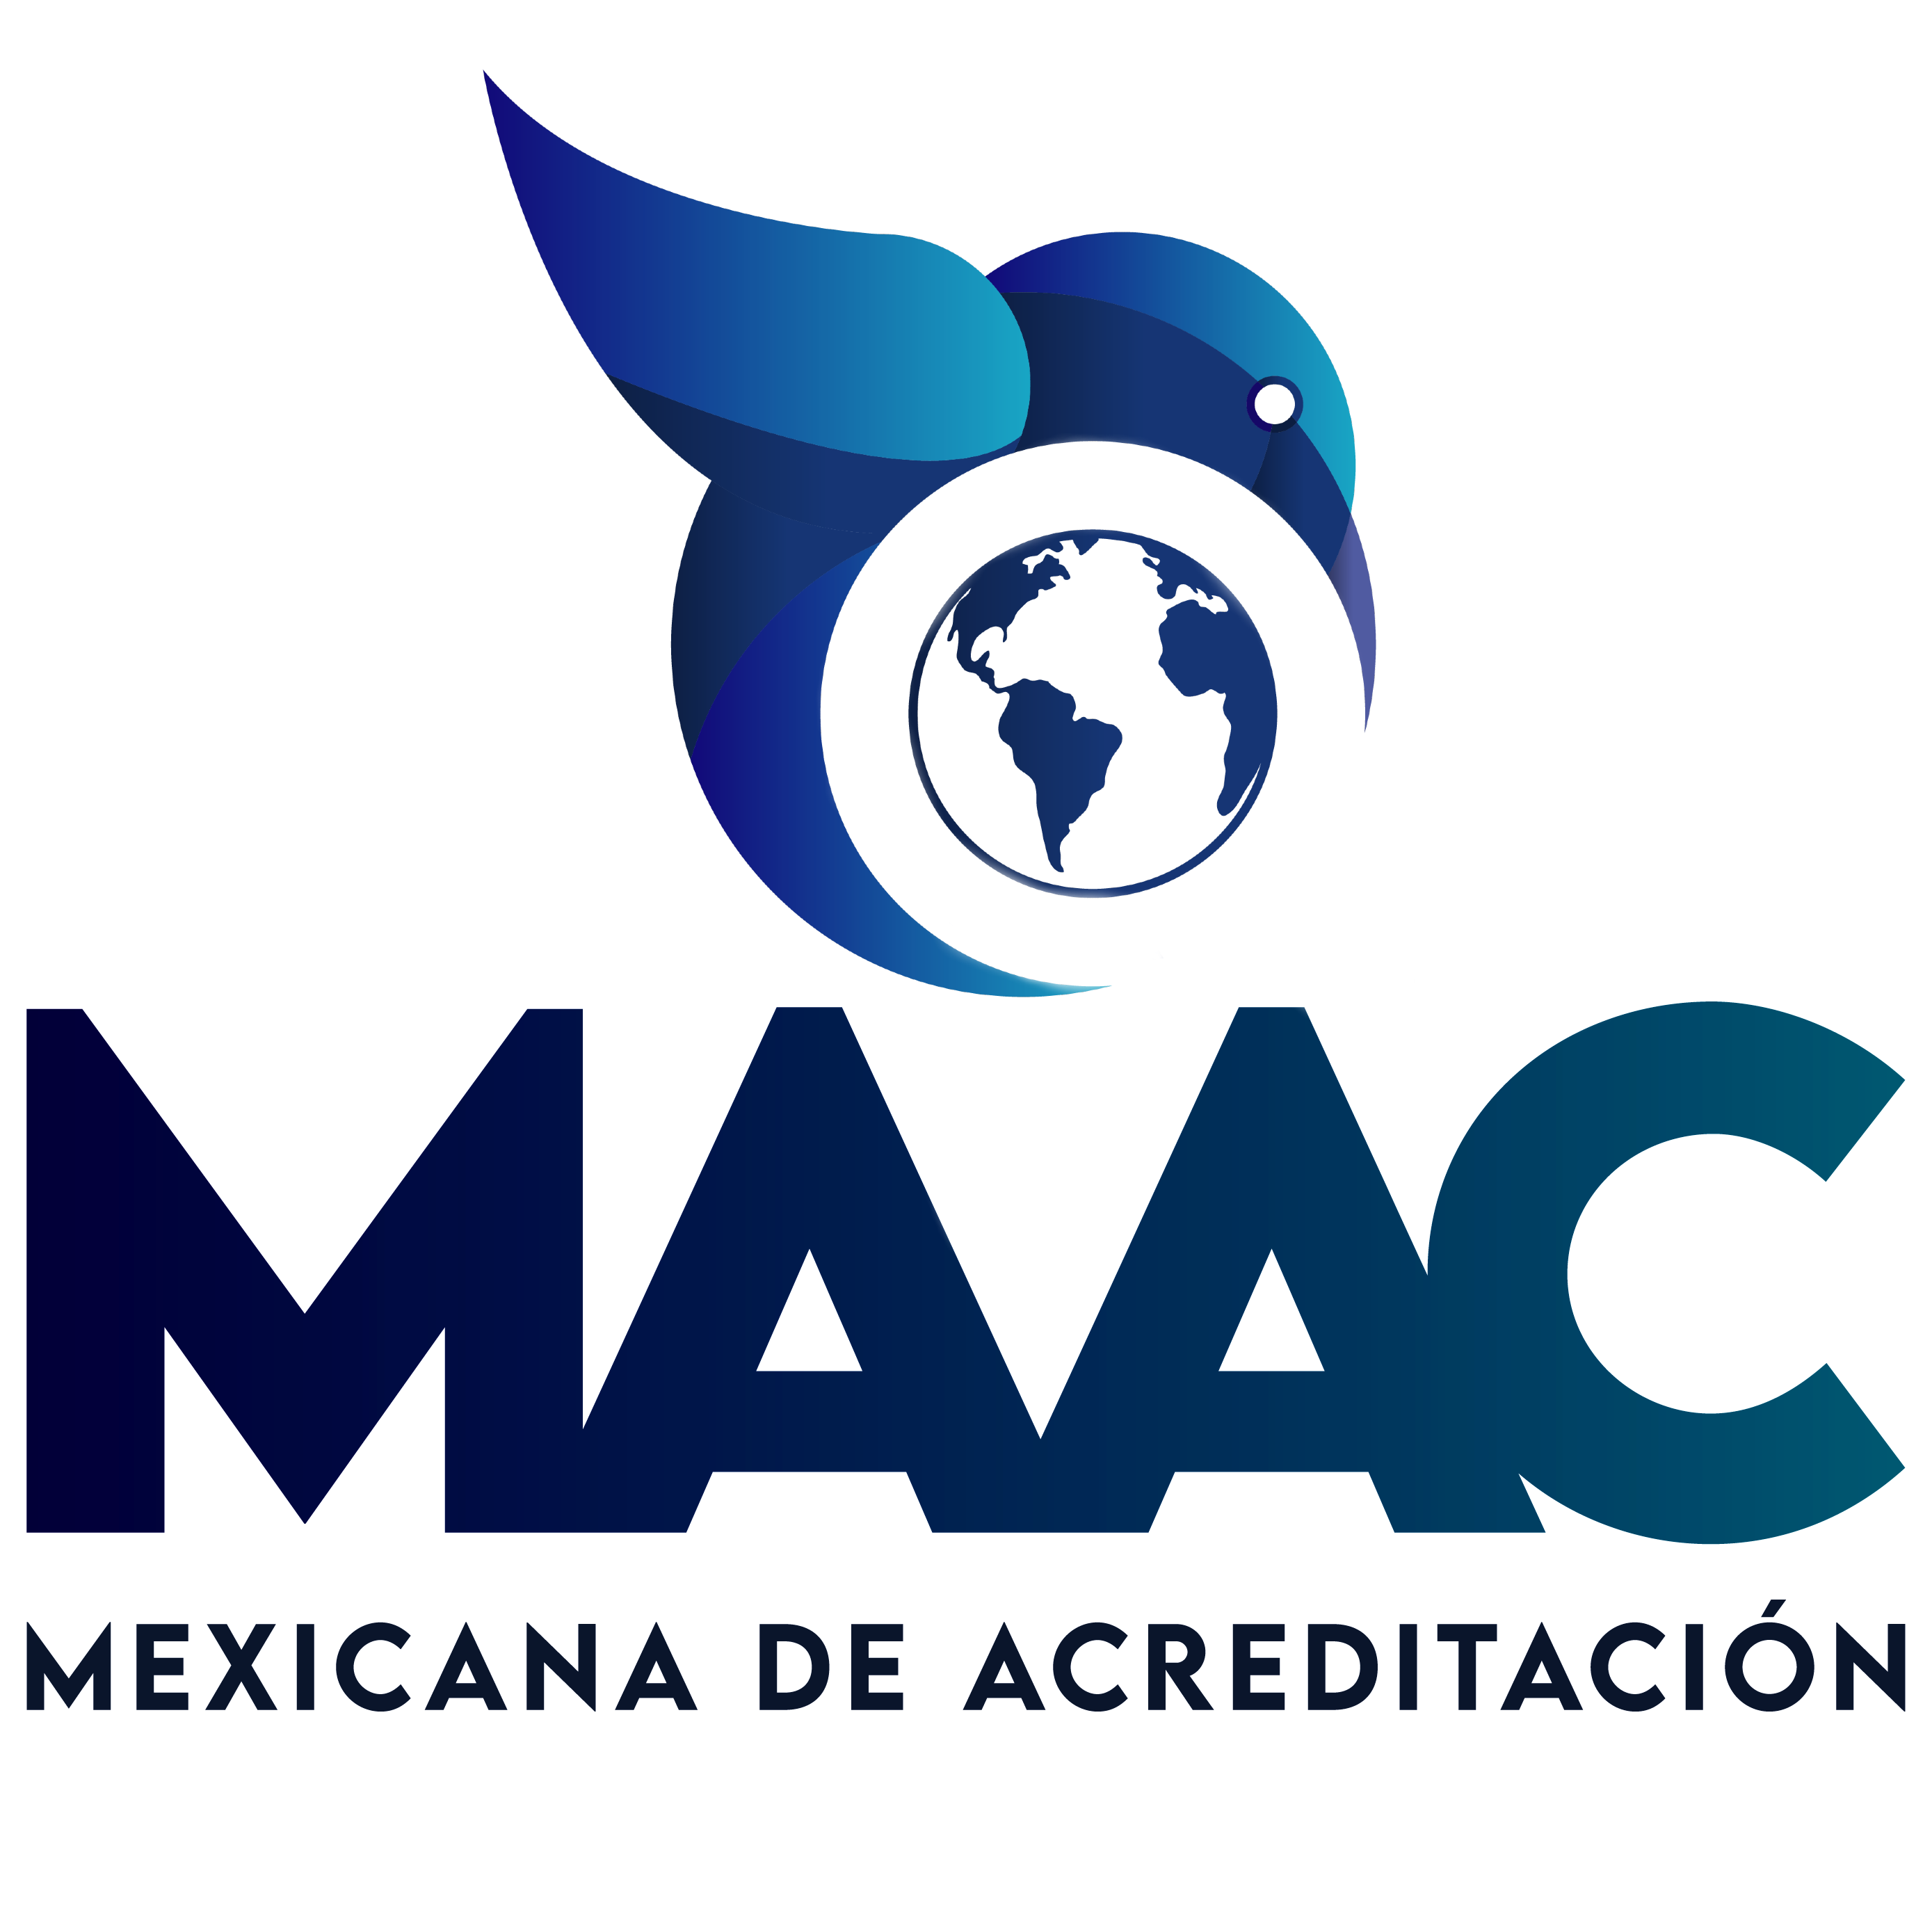 Mexico - Mexicana de Acreditación, MAAC, A.C. (MAAC)